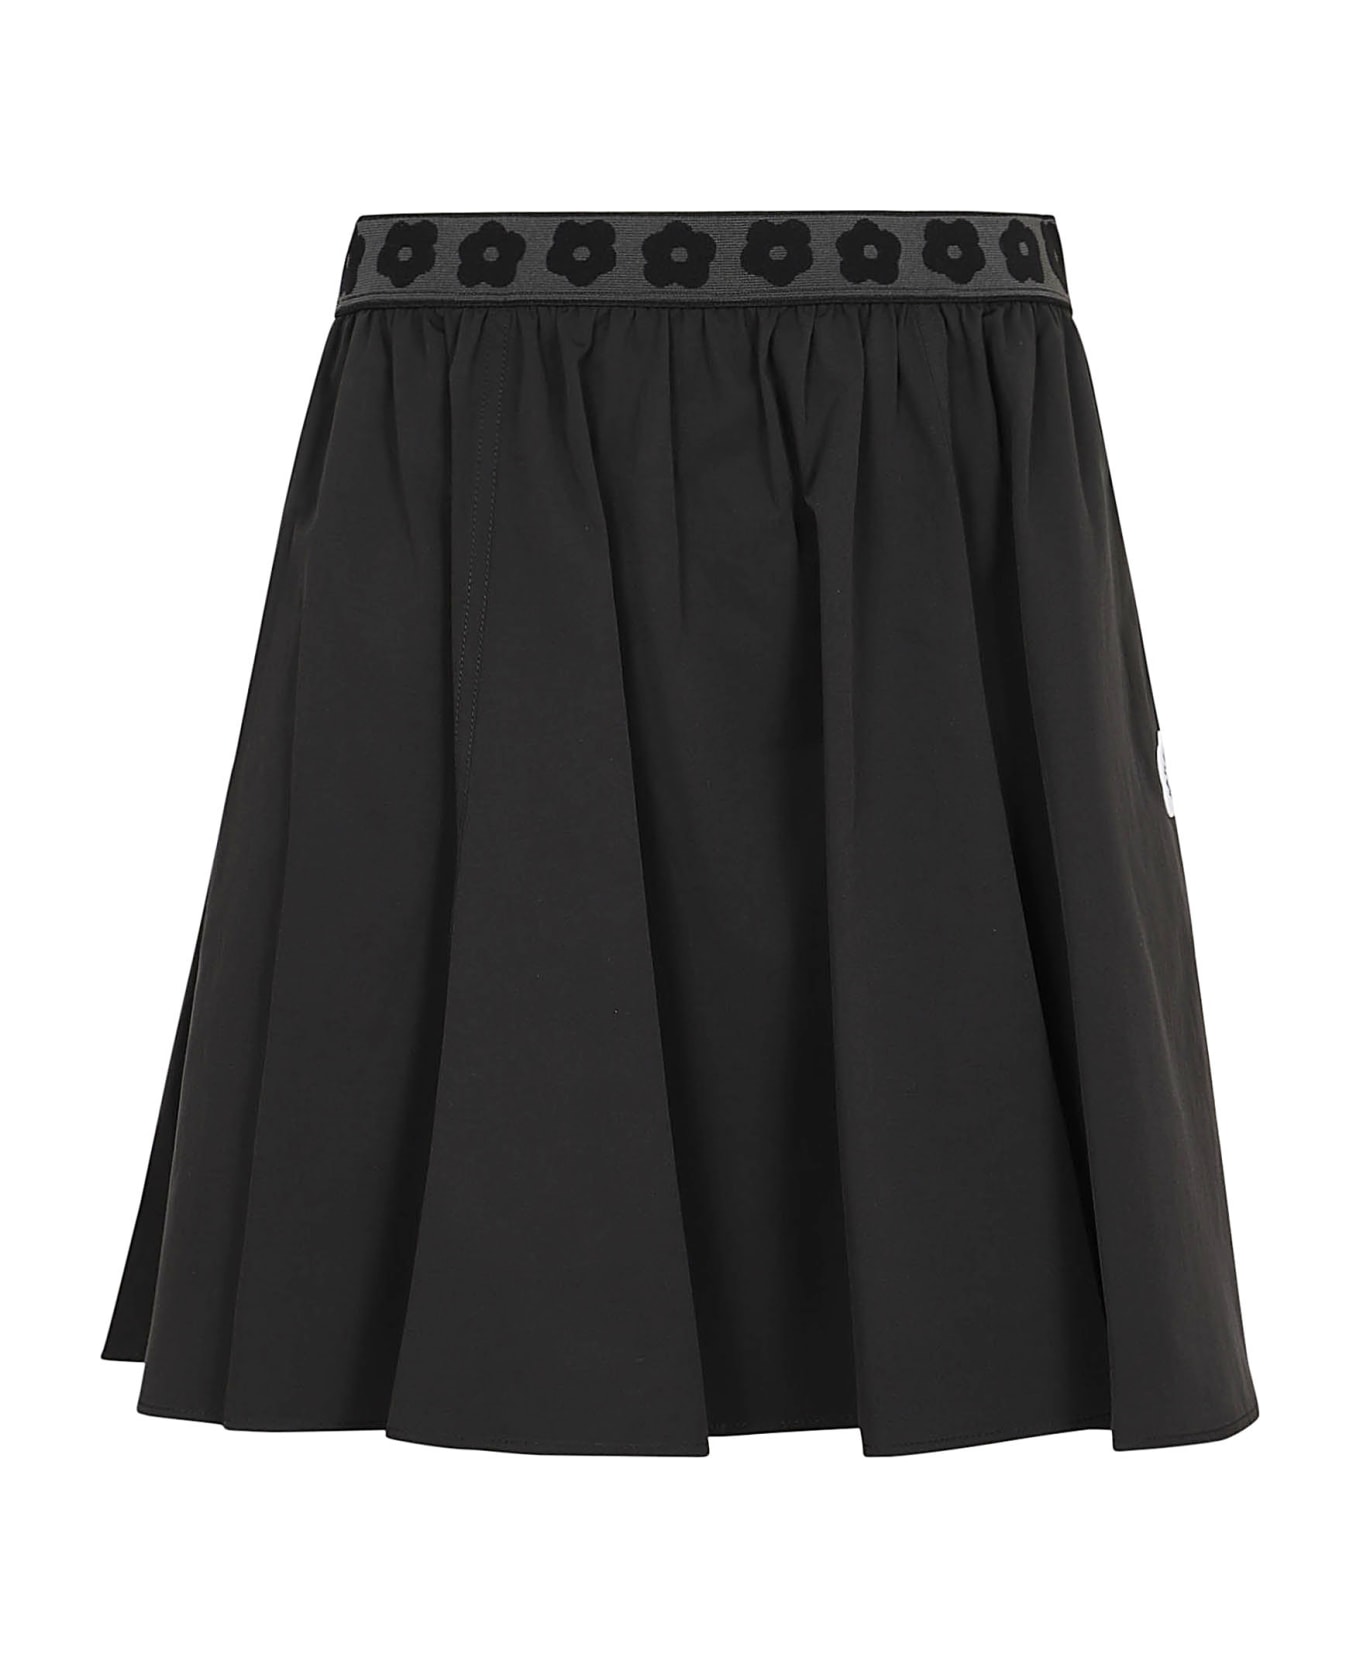 Kenzo Boke 2.0 Short Skirt - Black スカート